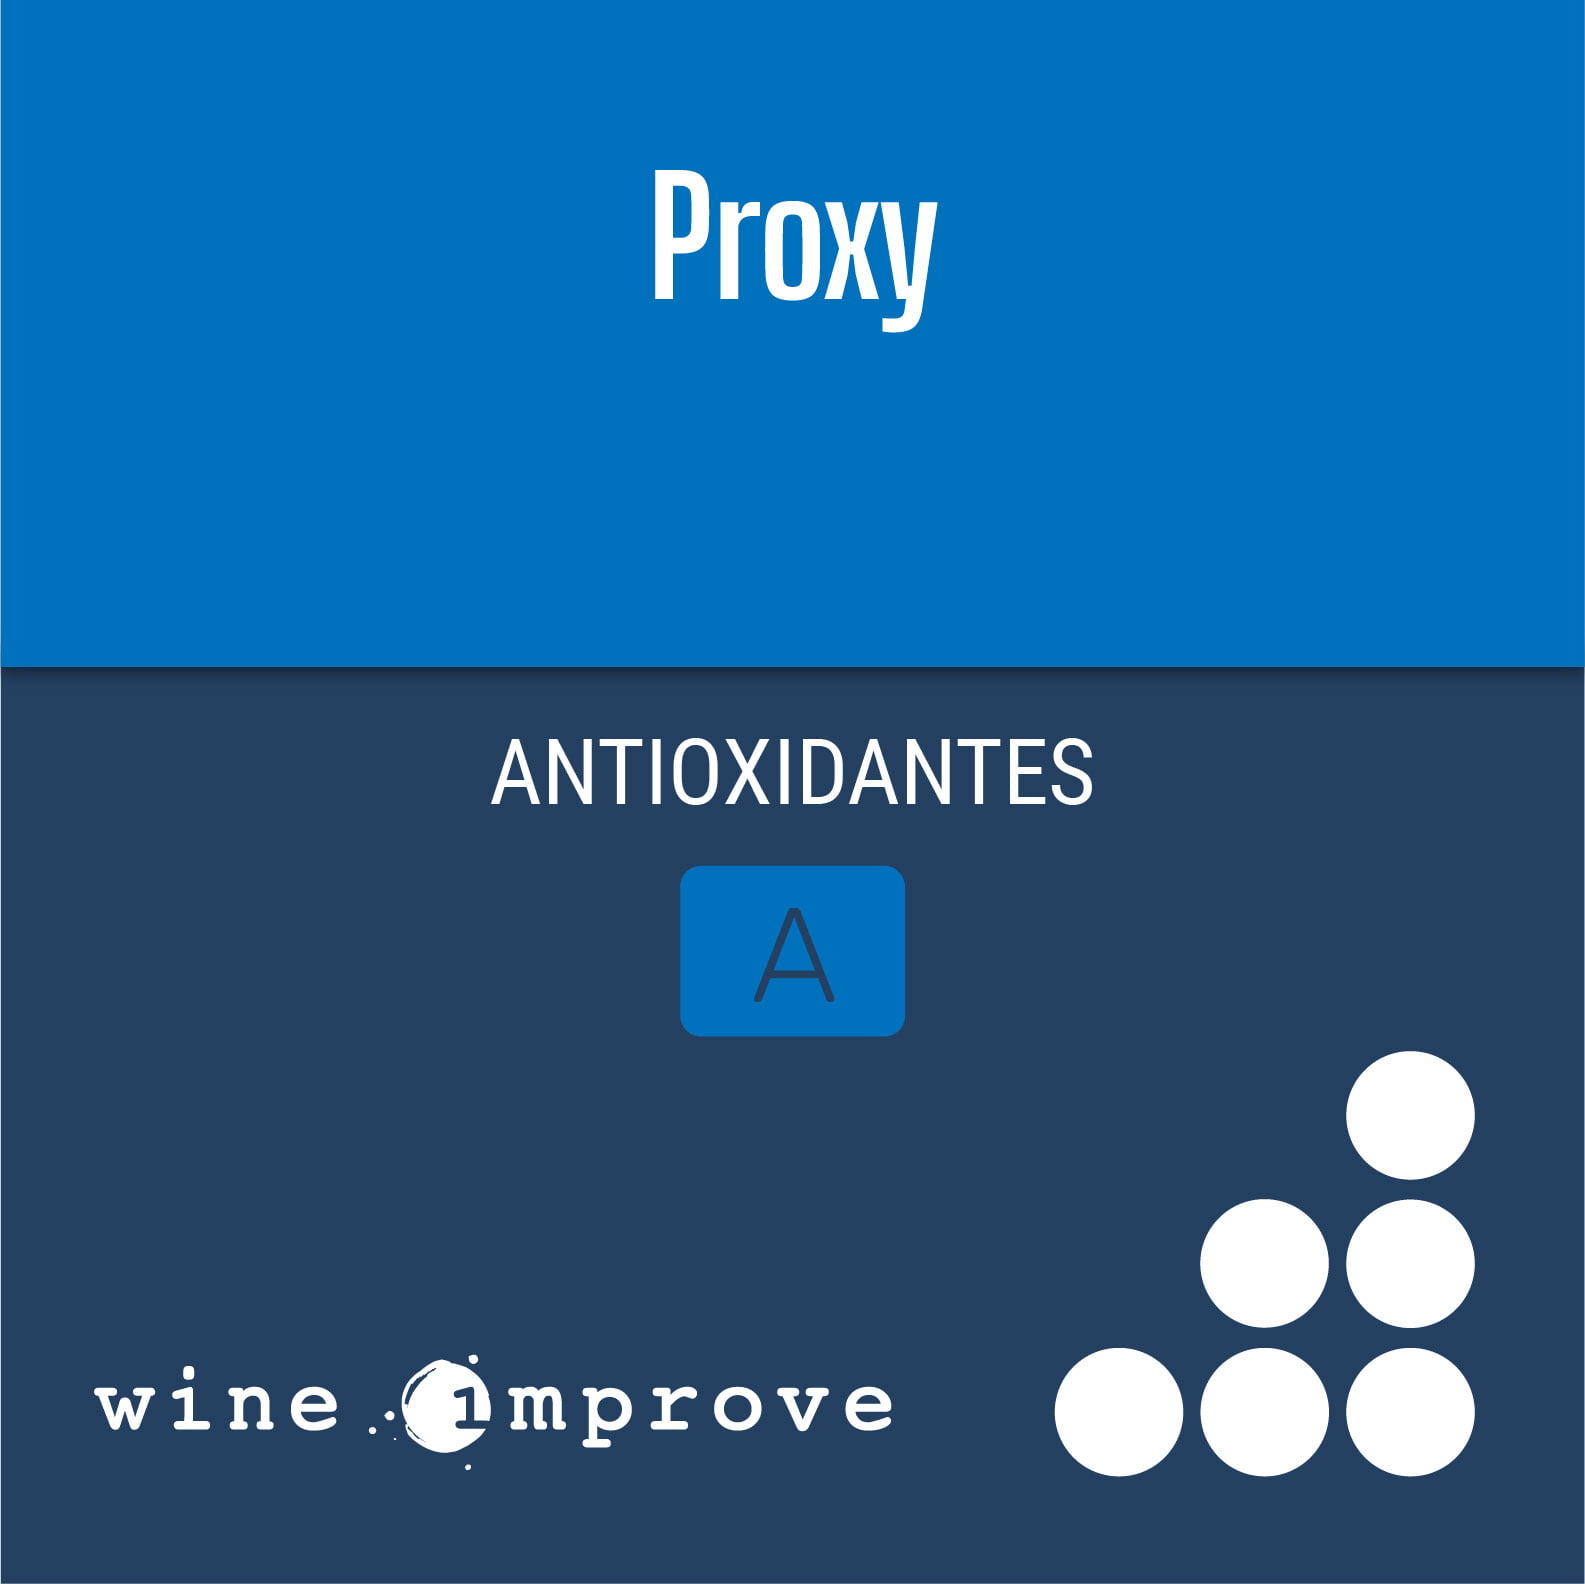 proxy-antioxidante